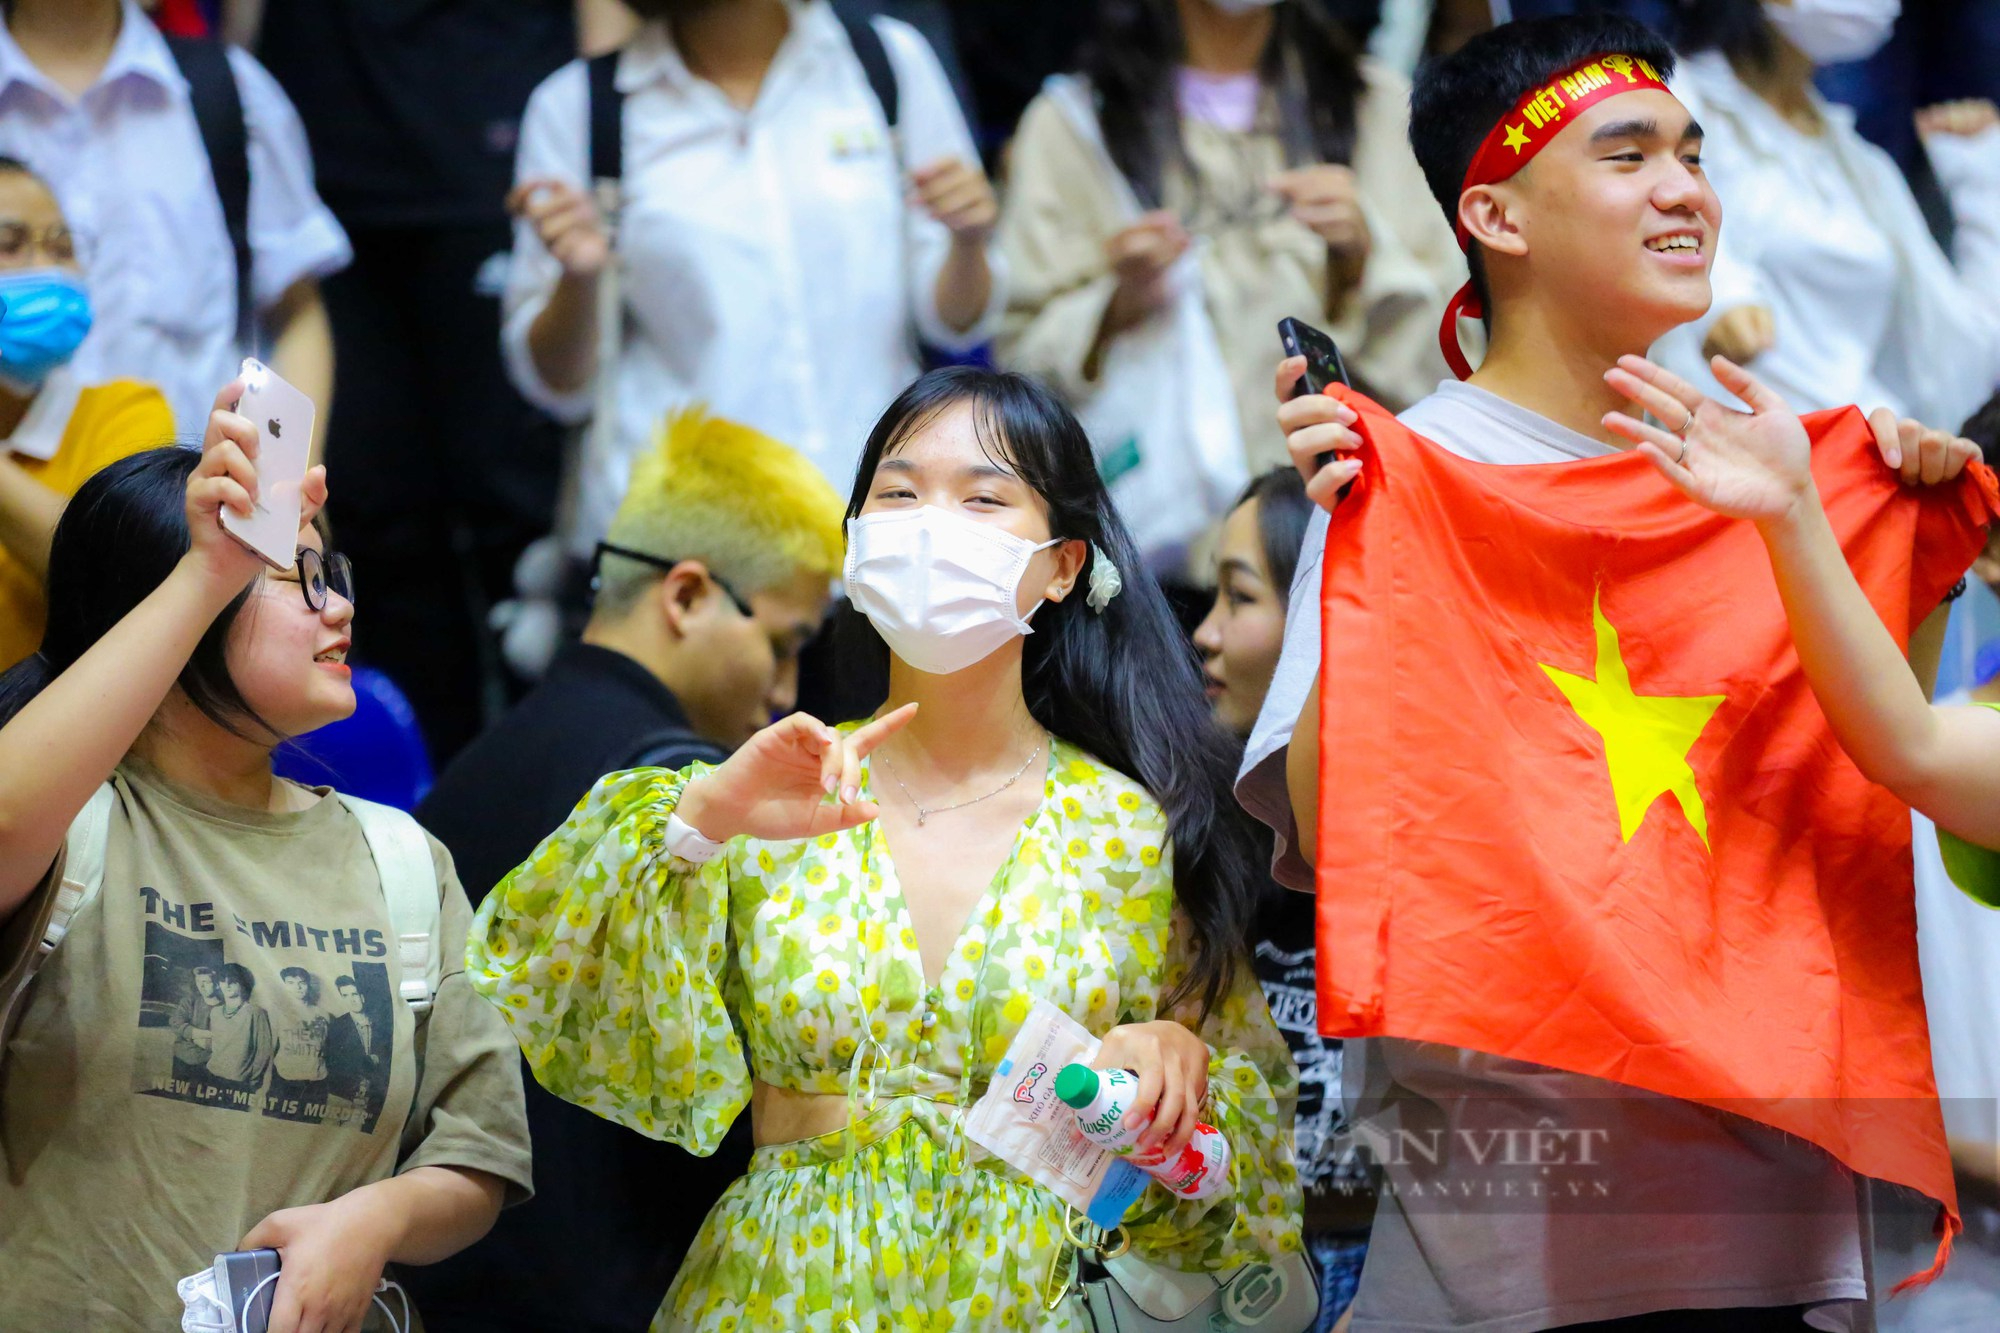 Dàn hot girl cổ vũ cực nhiệt trong chiến thắng của đội tuyển bóng rổ Việt Nam - Ảnh 4.